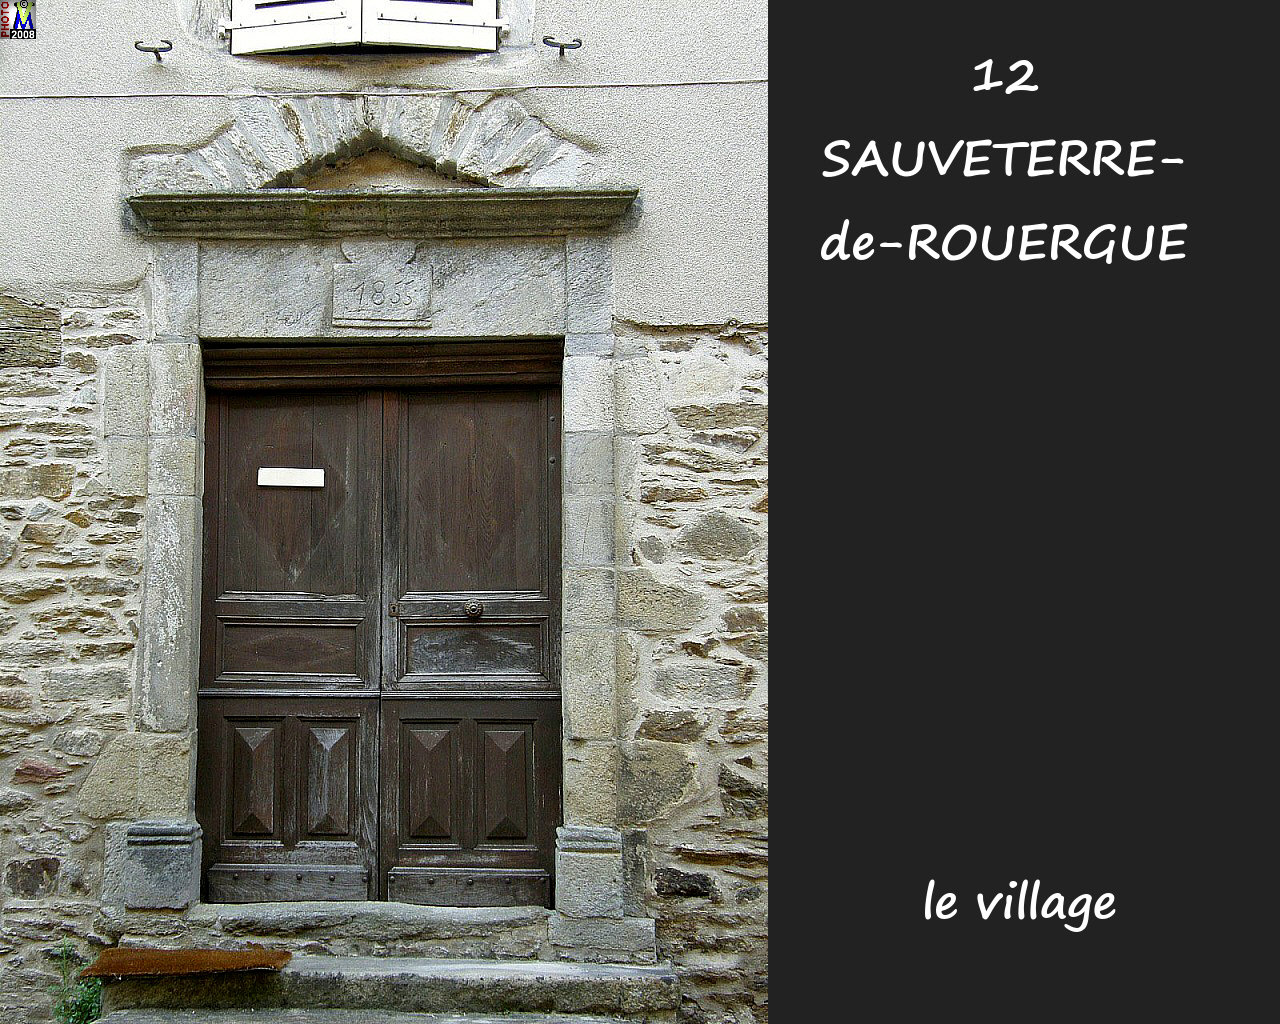 12SAUVETERRE-ROUERGUE_village_186.jpg